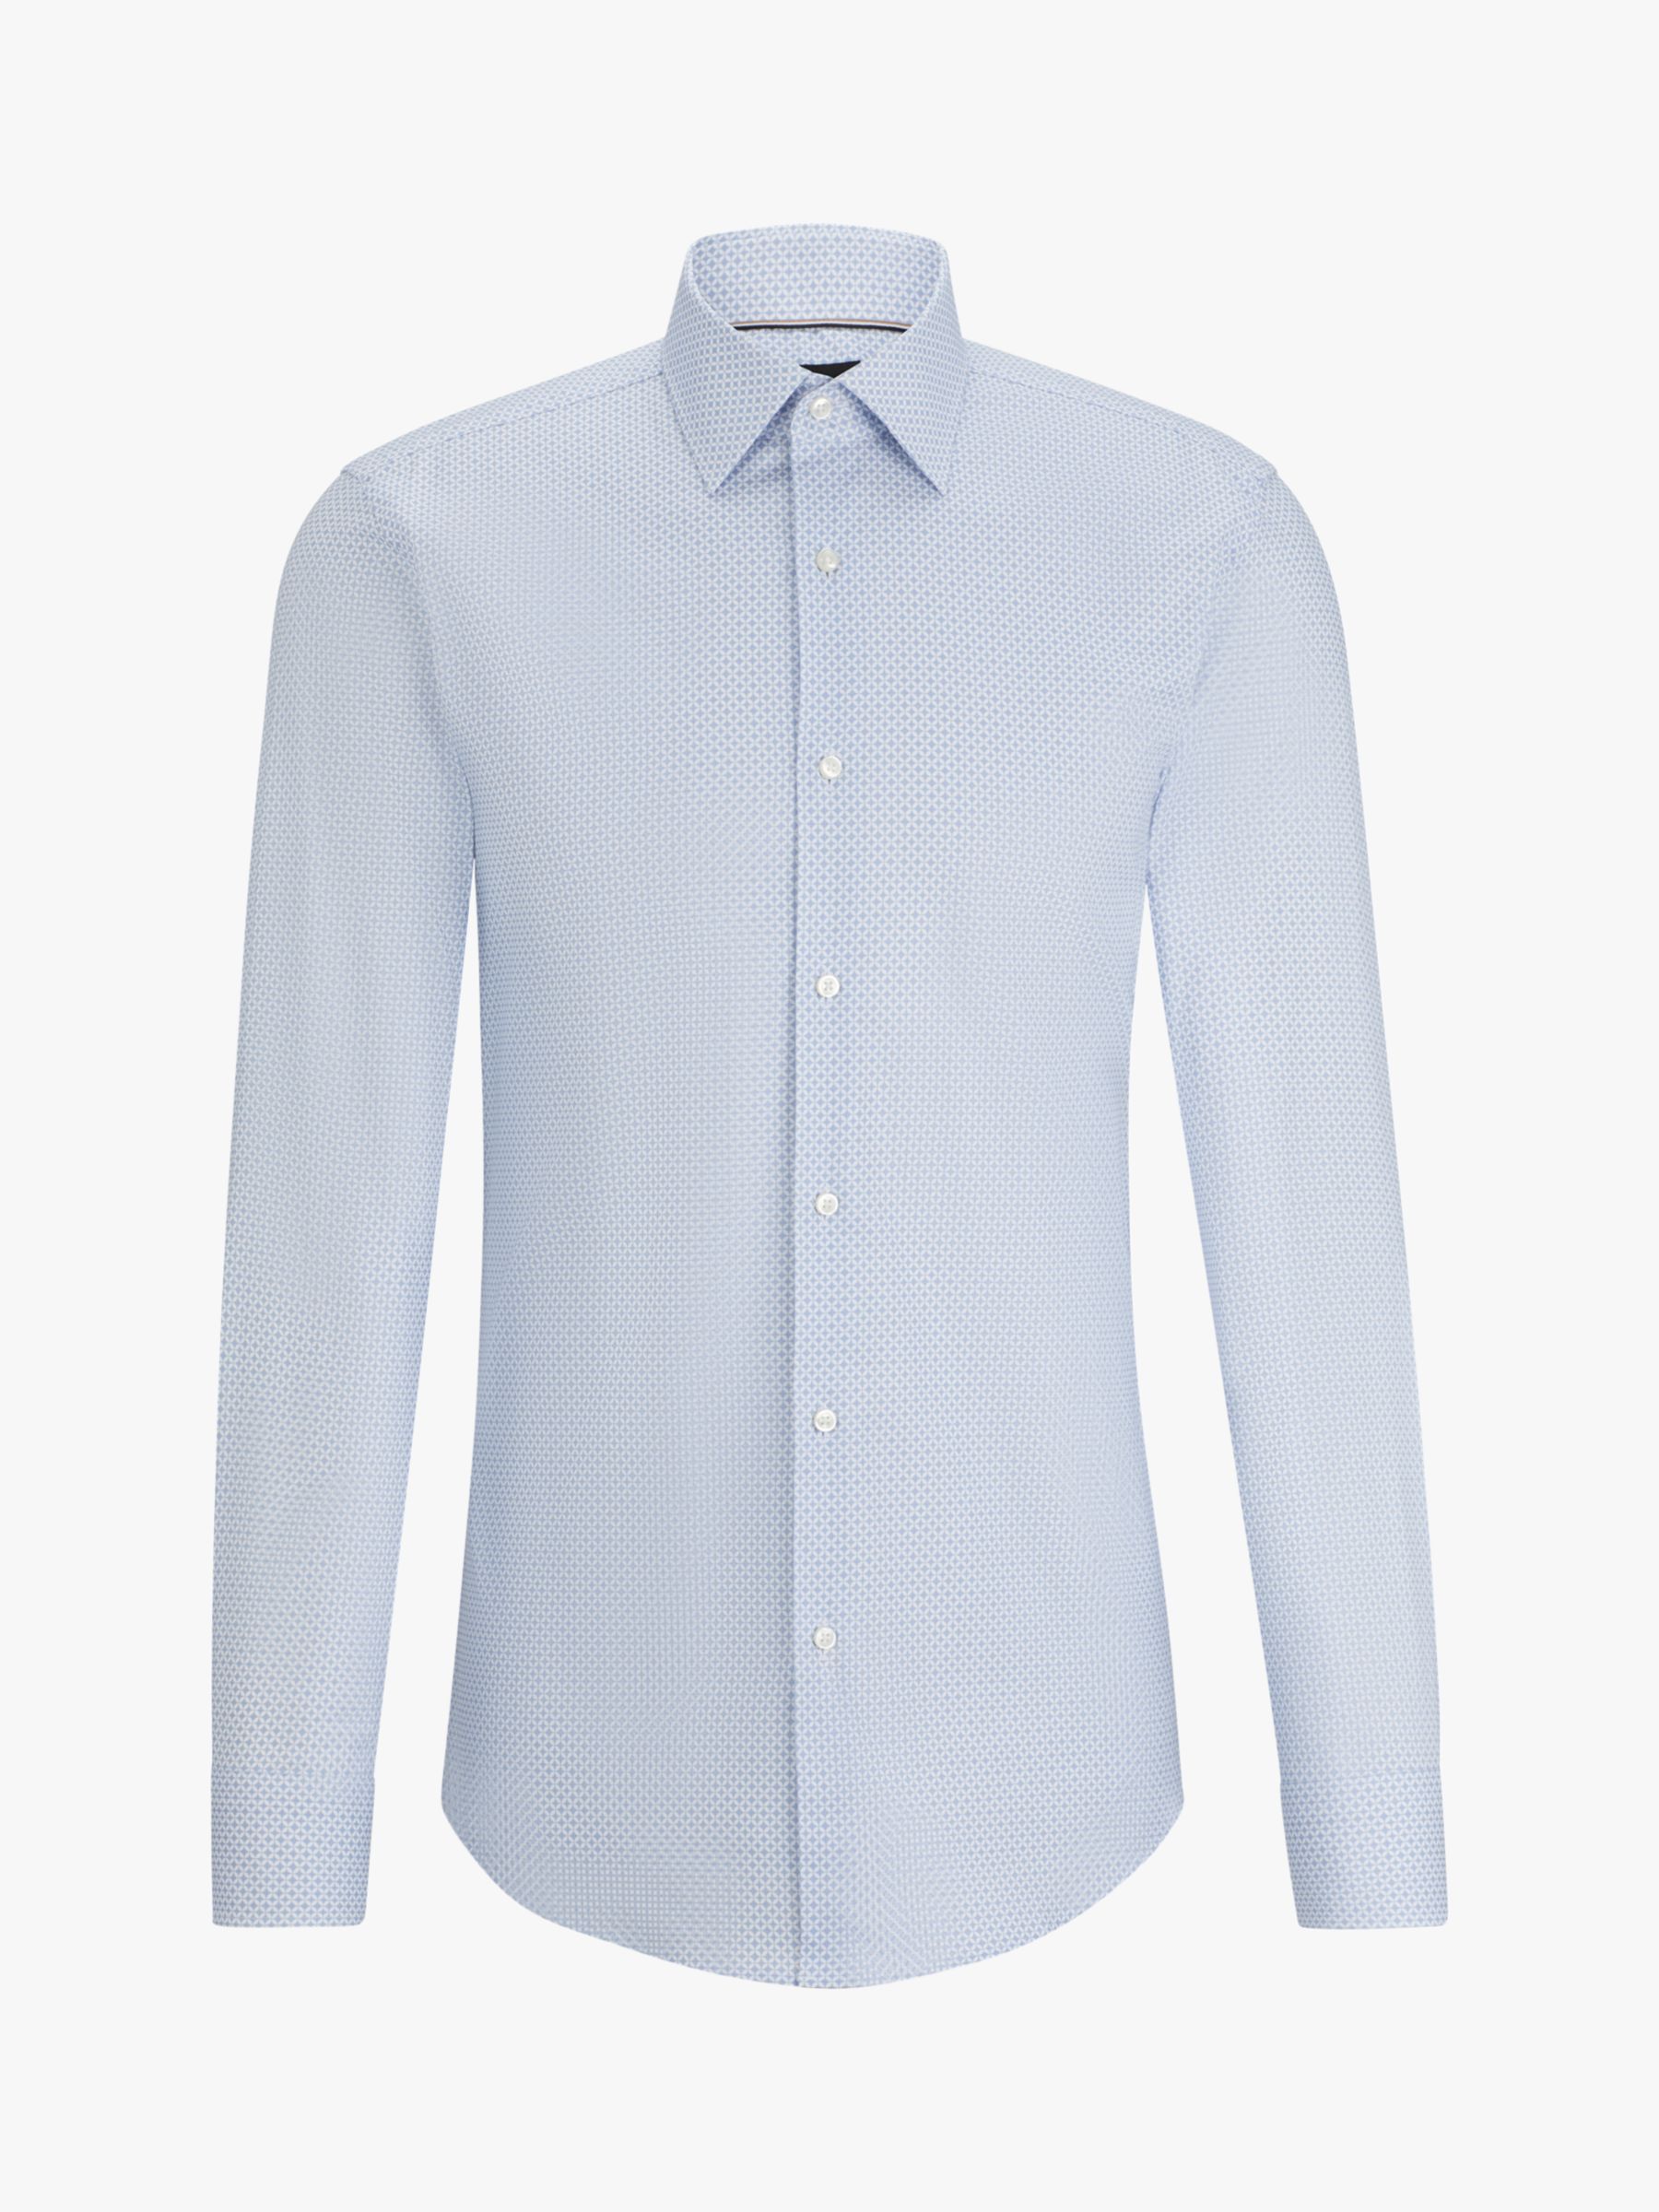 BOSS H-Hank Kent Long Sleeve Shirt, Light/Pastel Blue, 17.75L